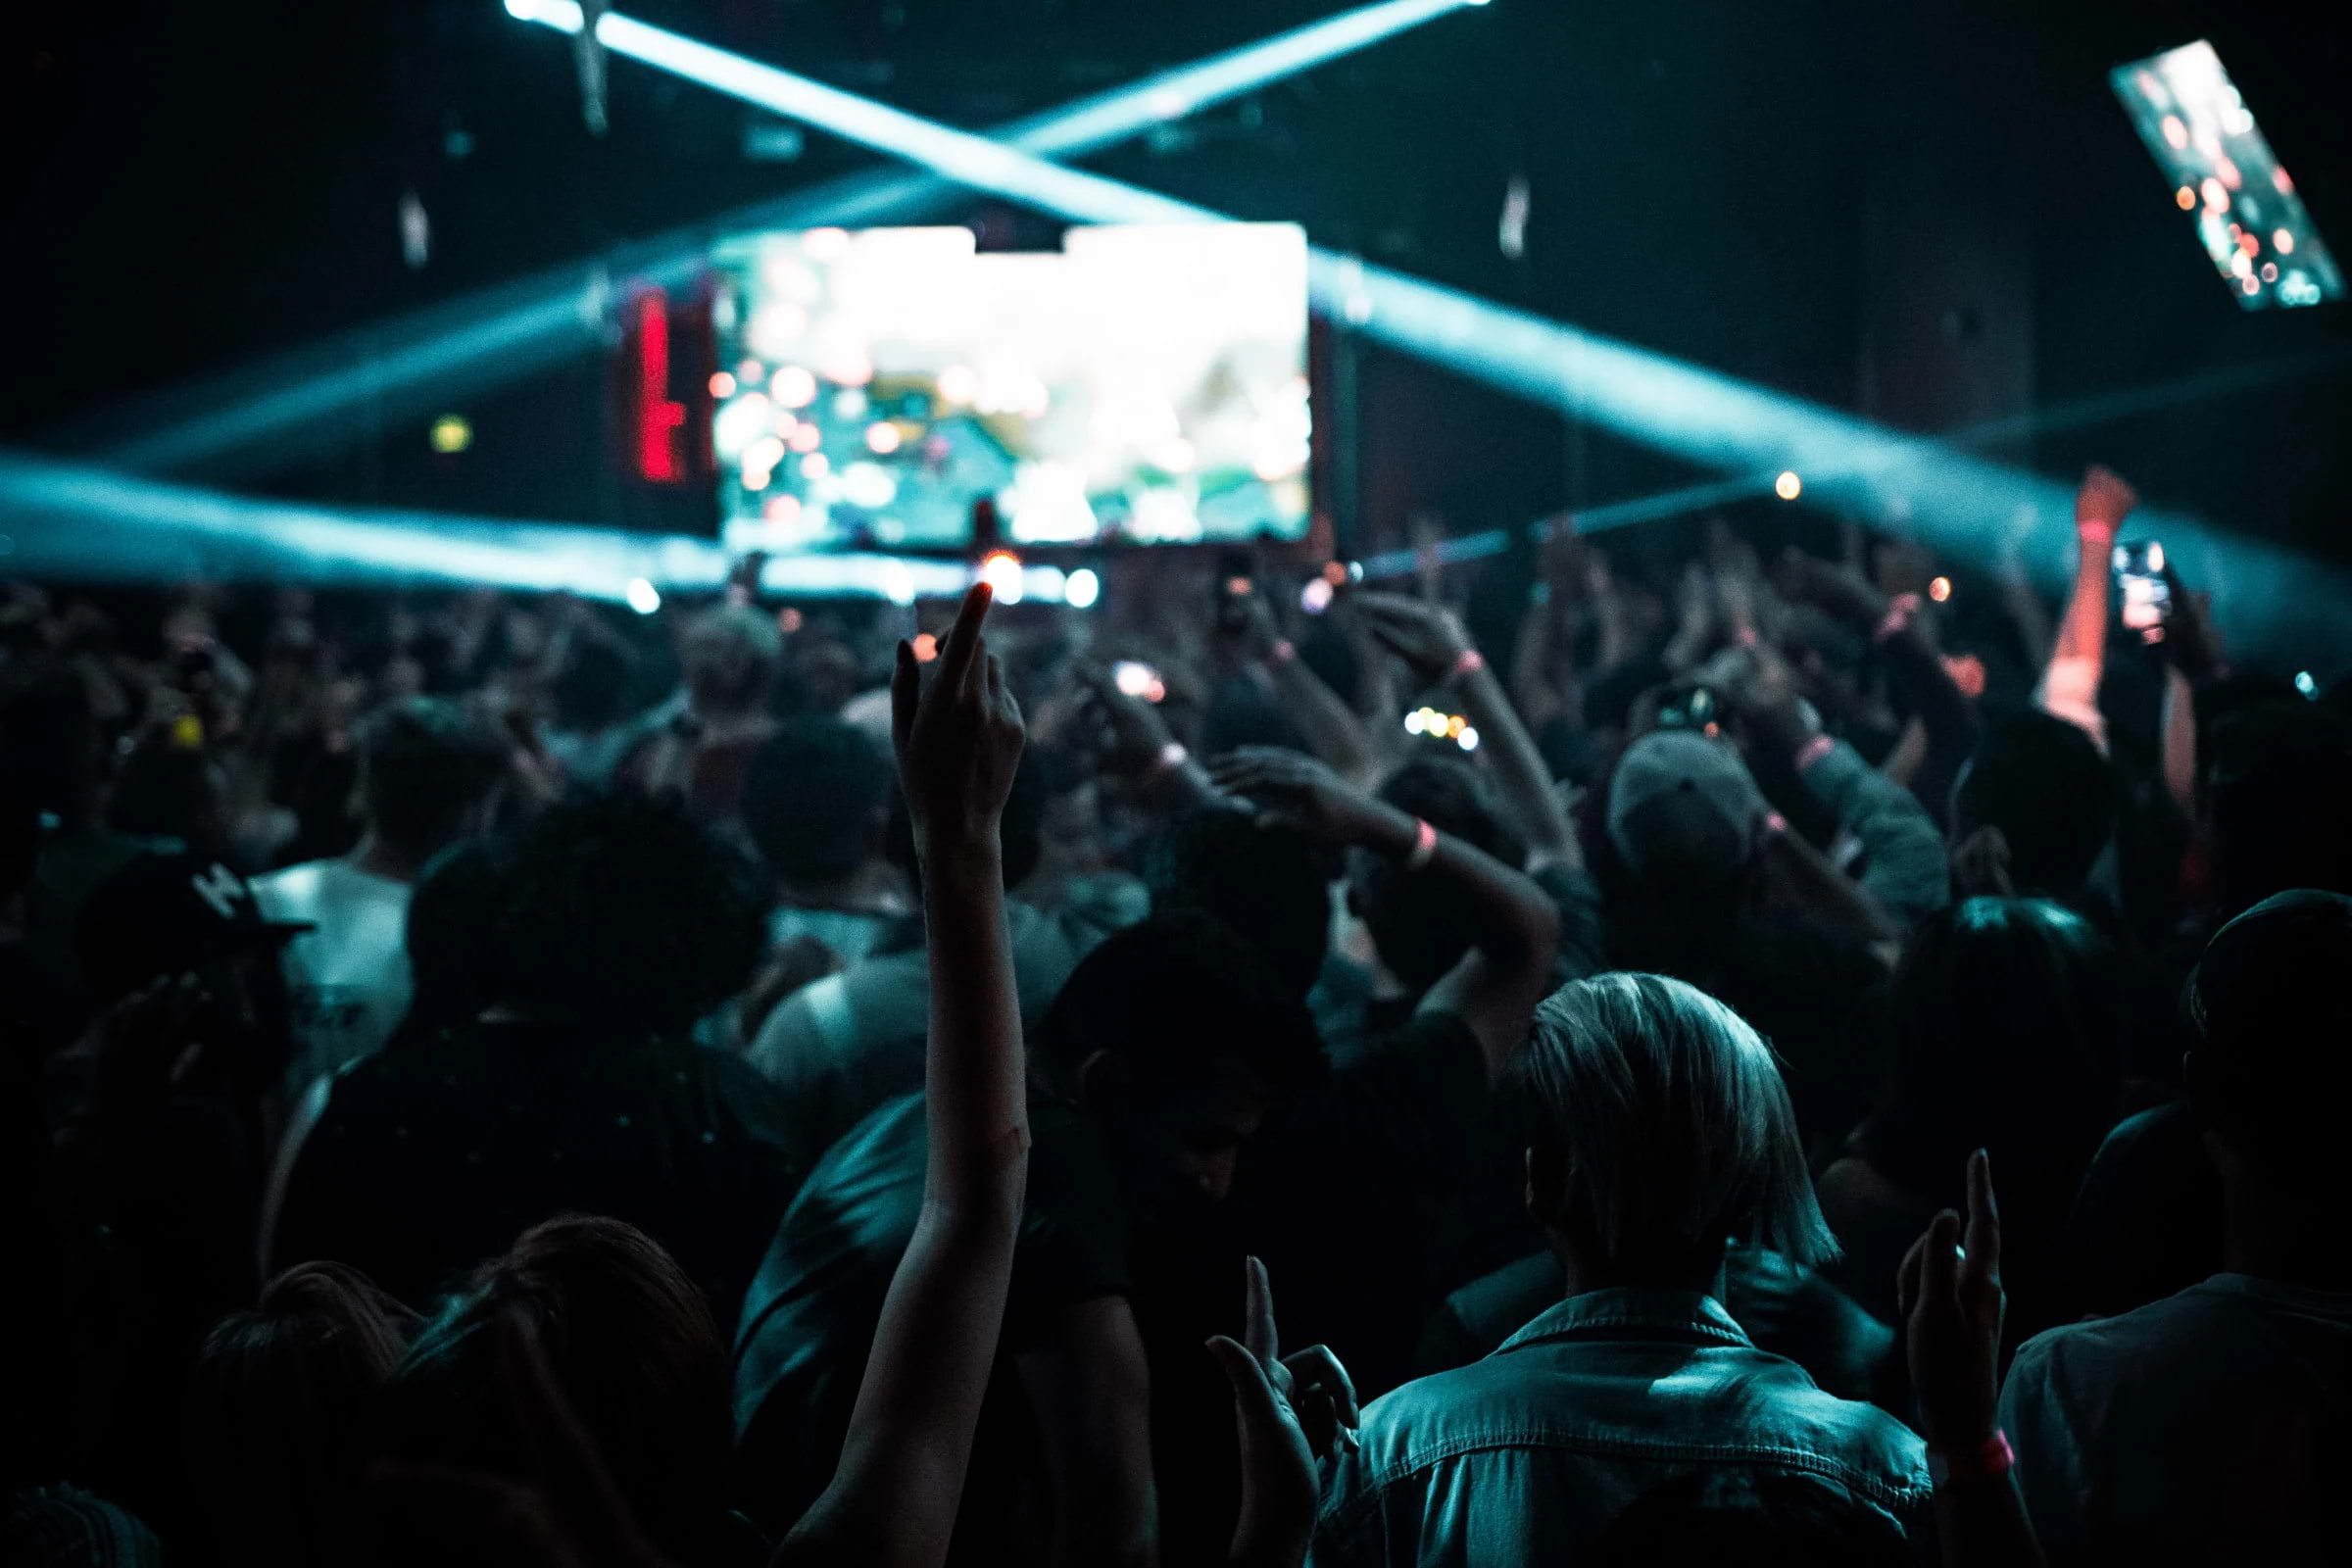 A crowd dancing in a nightclub